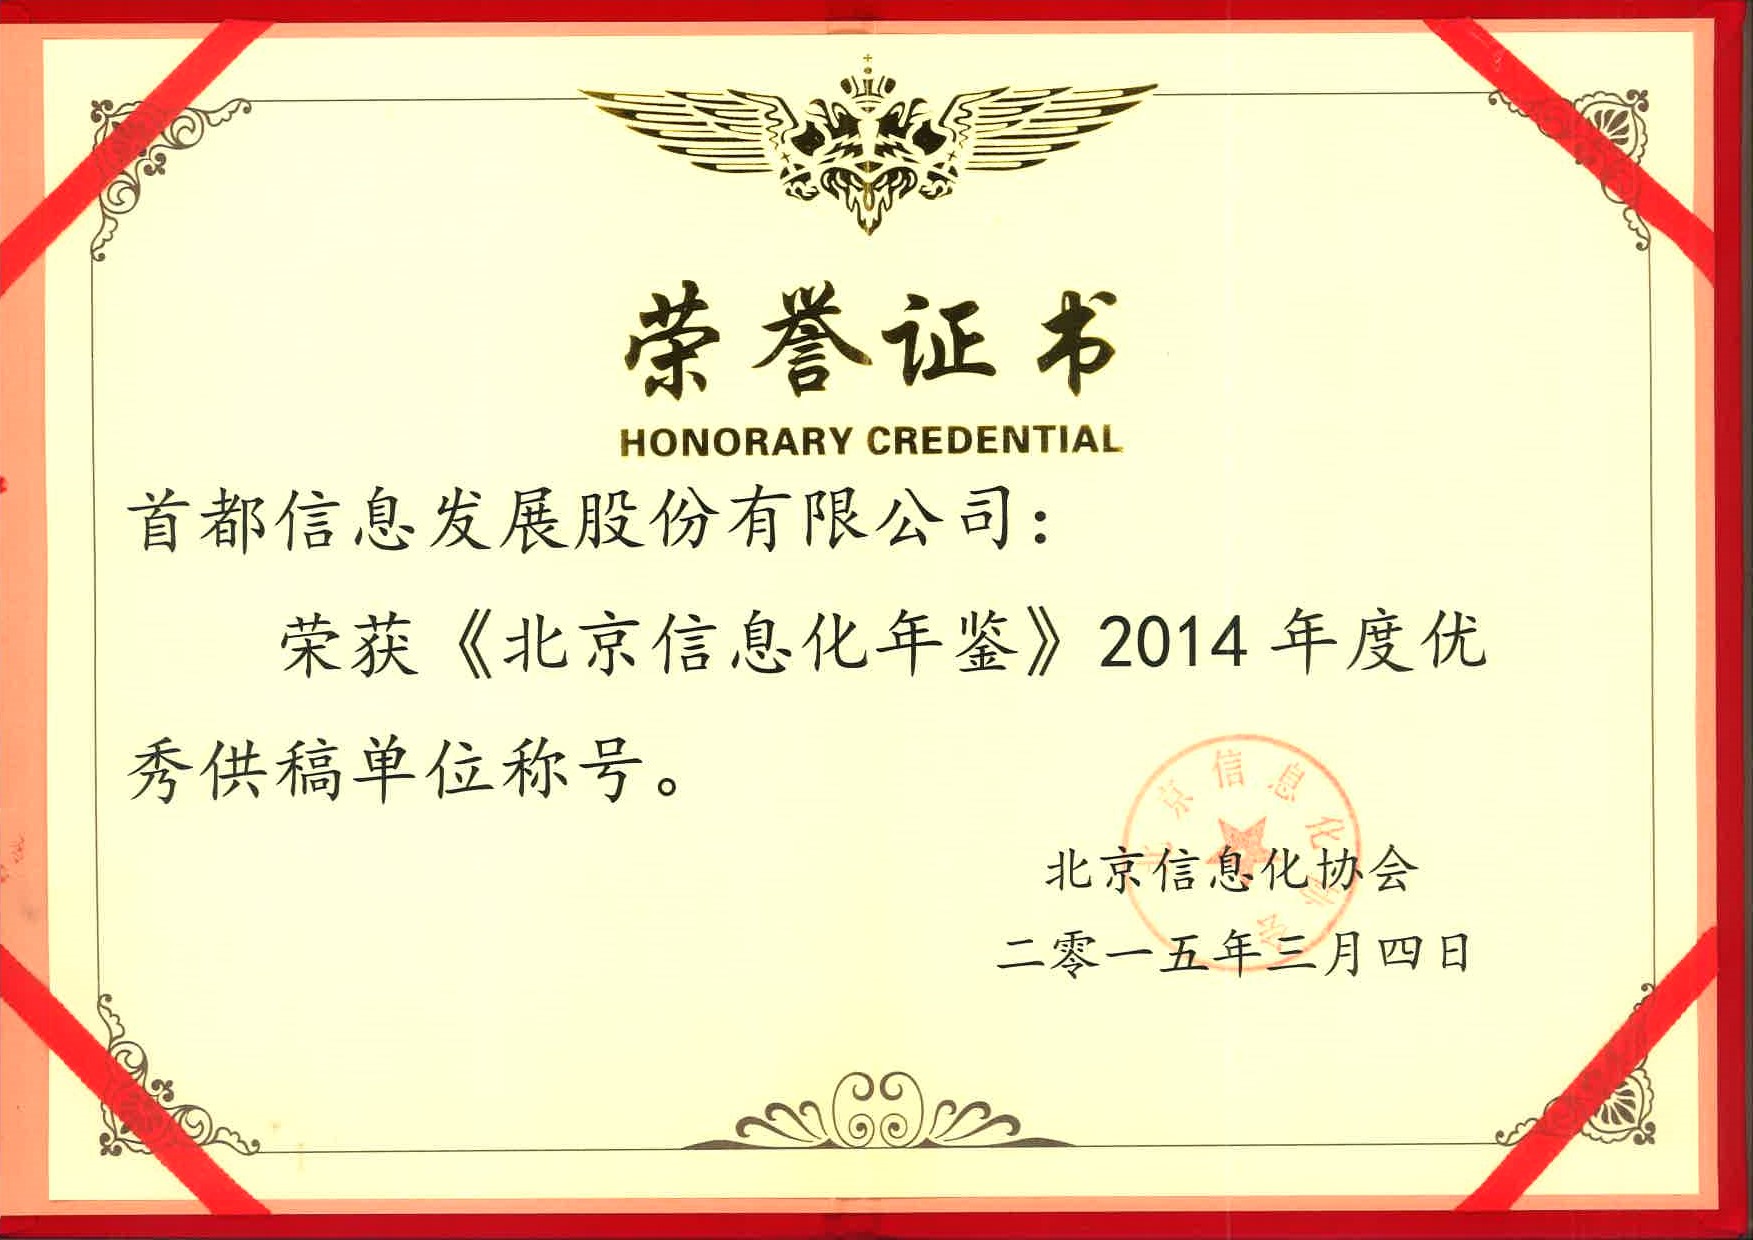 首信公司荣获《北京信息化年鉴》2014年度优秀供稿单位